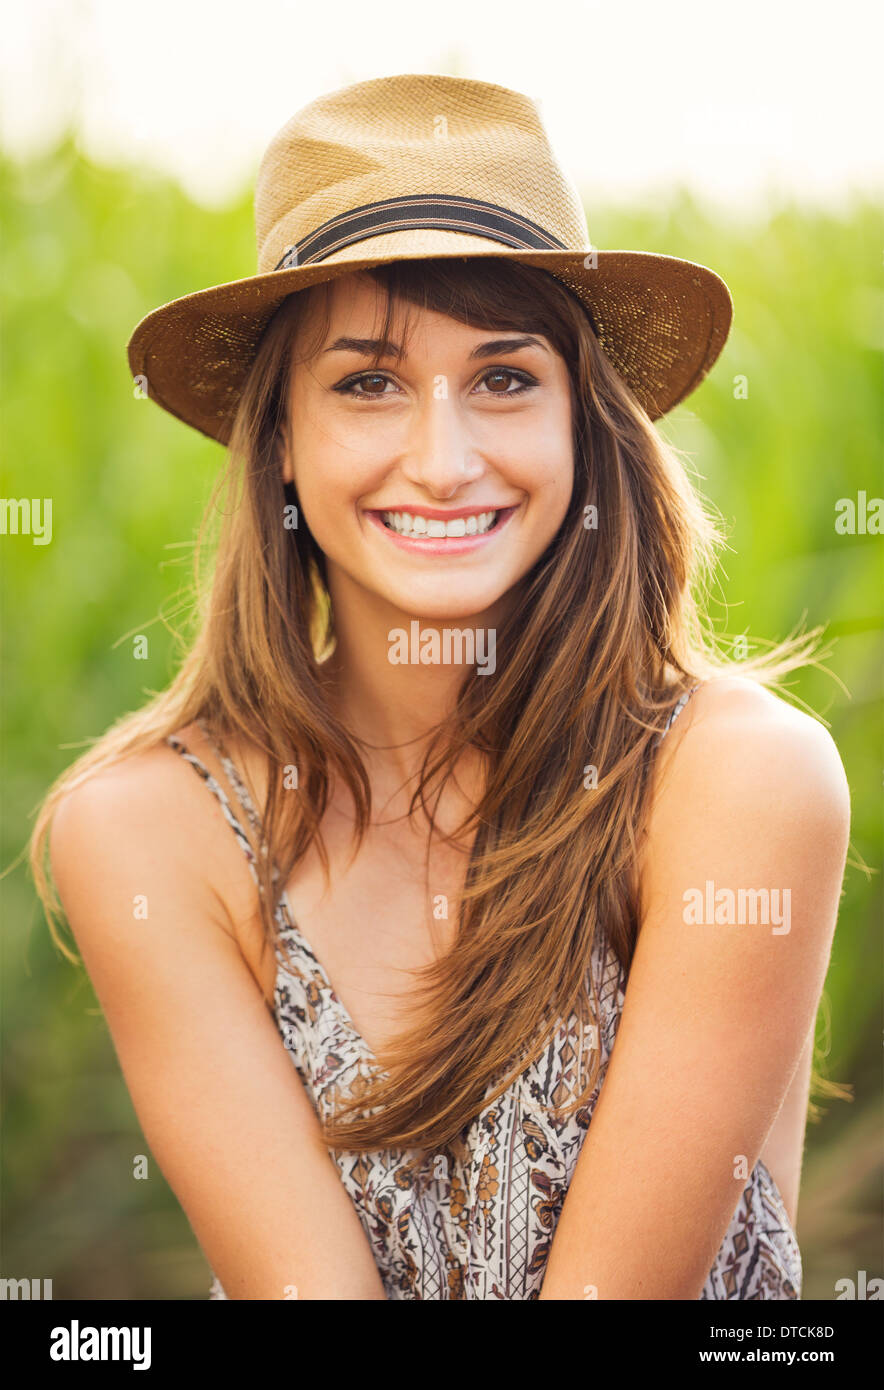 Schöne junge Frau im Freien. Romantische Mode-Lifestyle-Modell im Sonnenkleid. Glückliche Gefühle. Hintergrundbeleuchtung. Warme Farbtöne Stockfoto